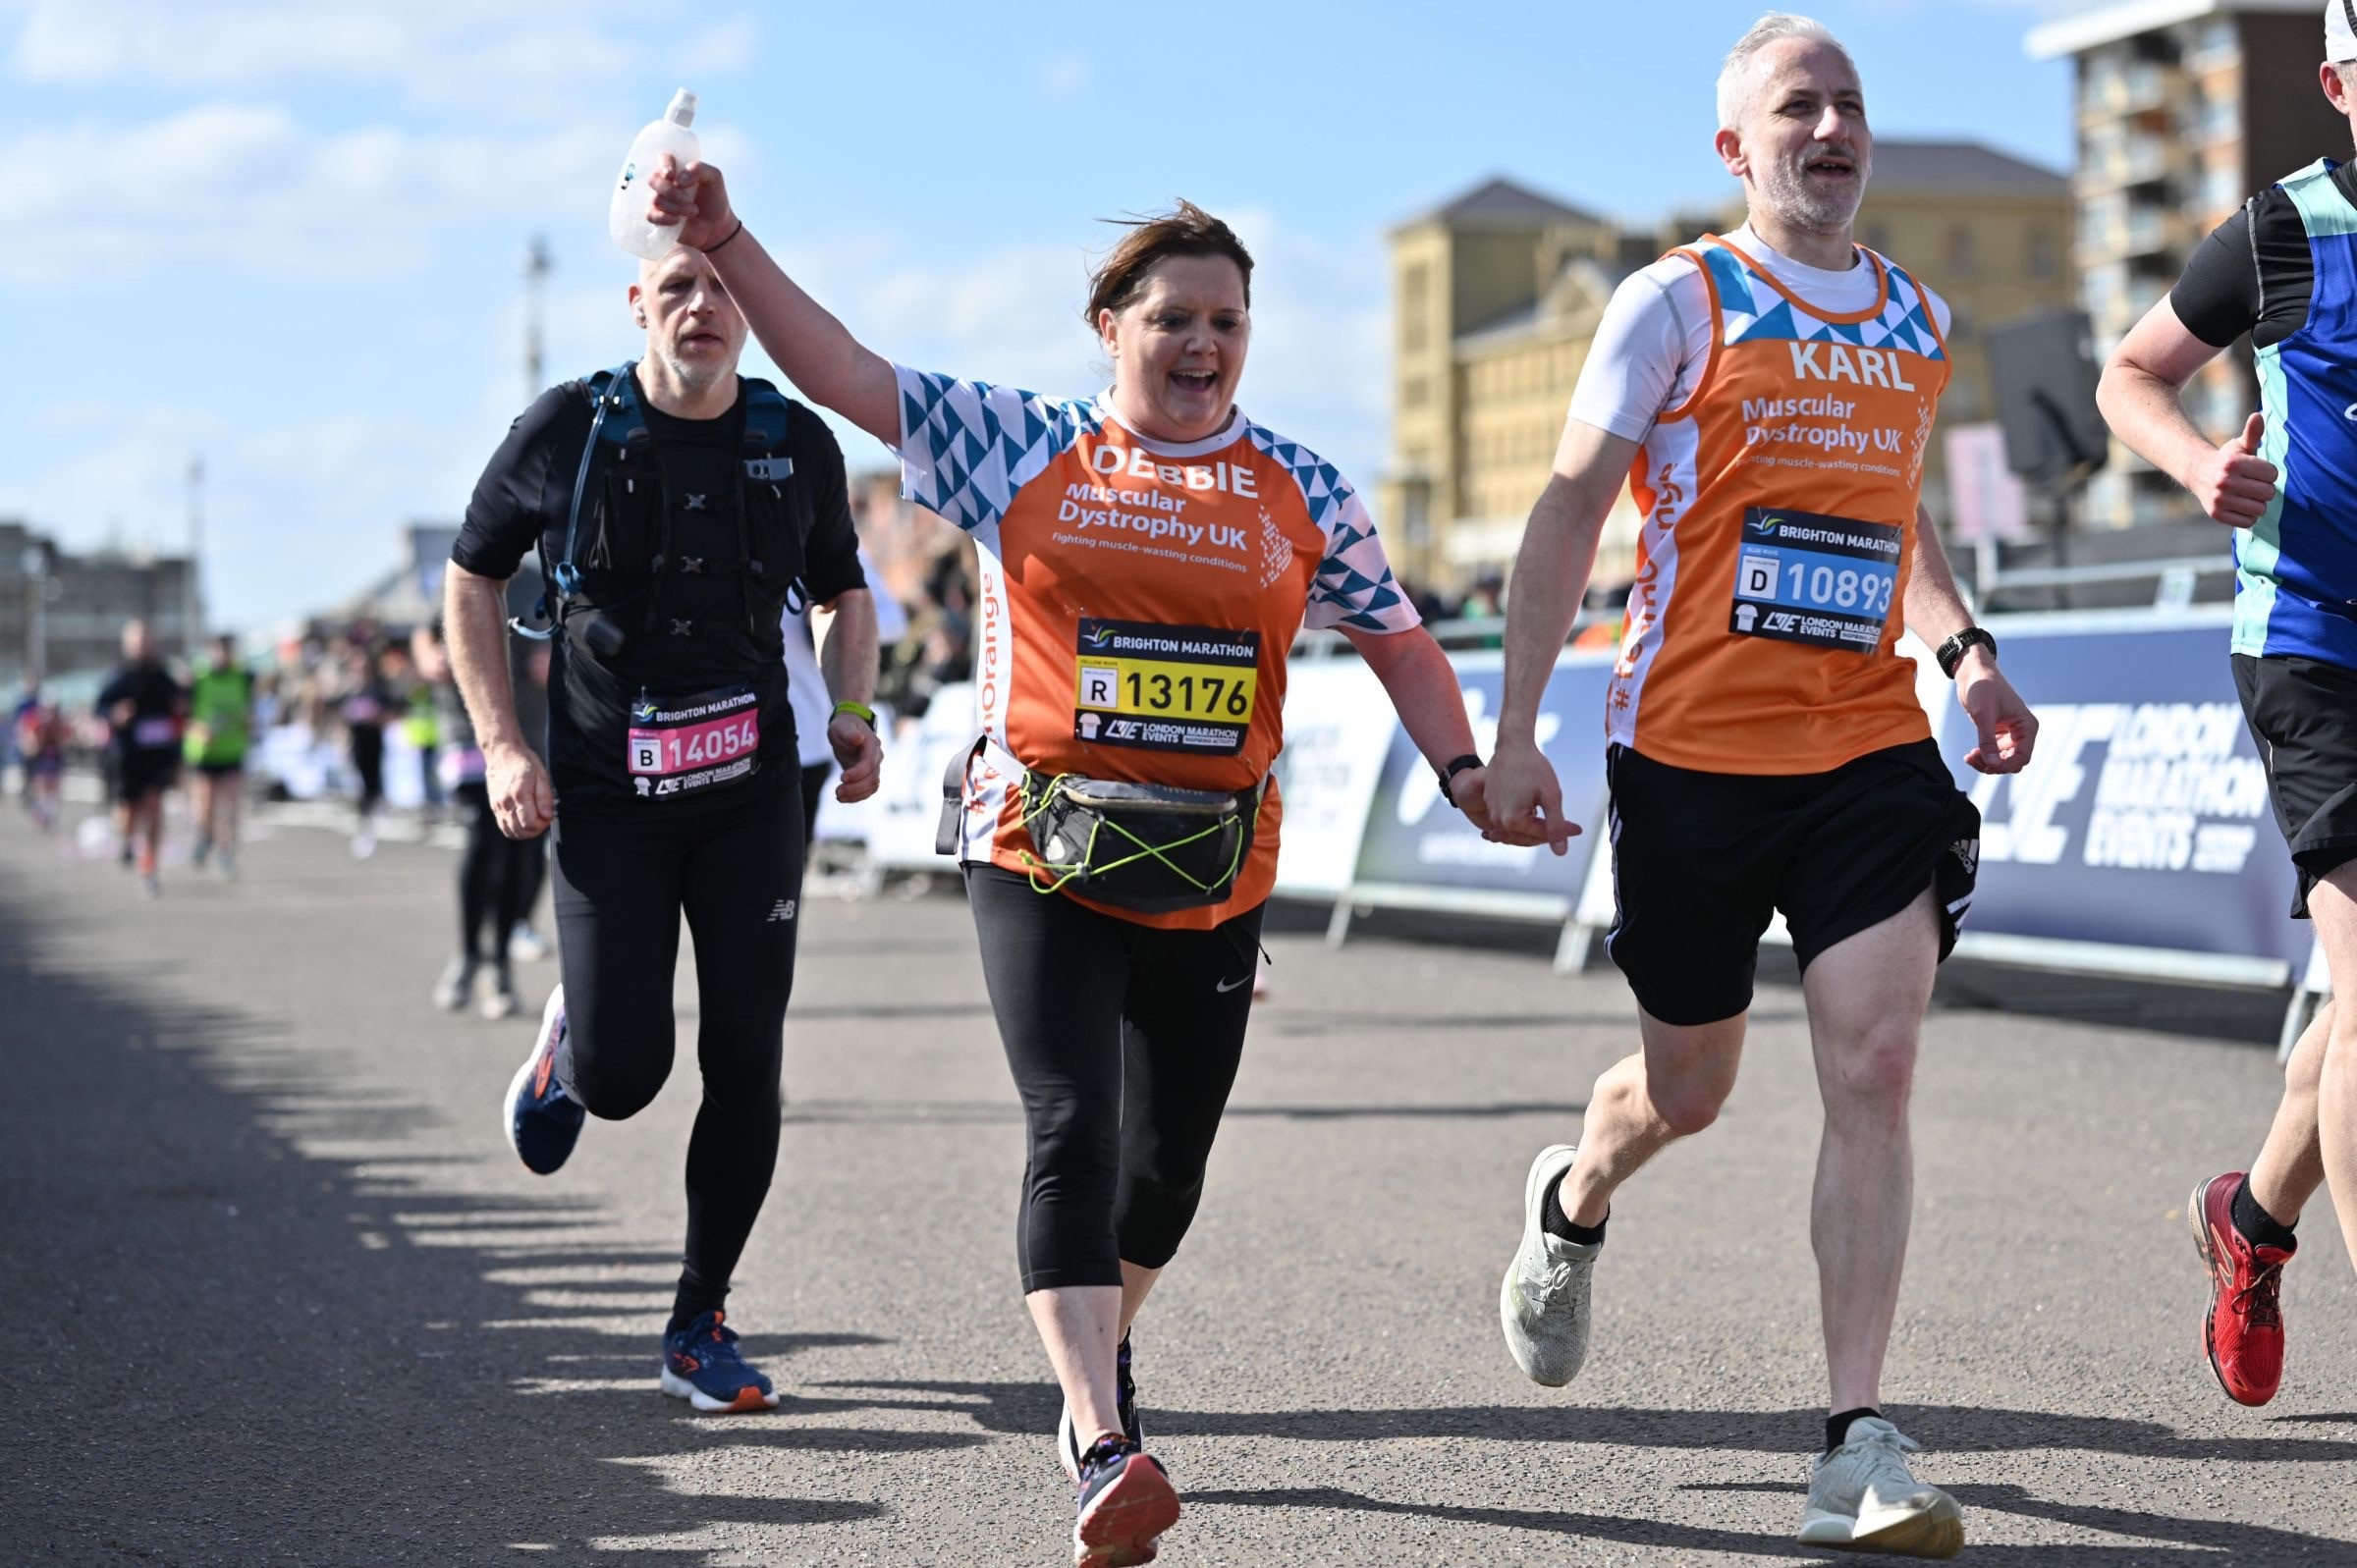 Debbie and Karl running, wearing their Team Orange jerseys at the Brighton Marathon